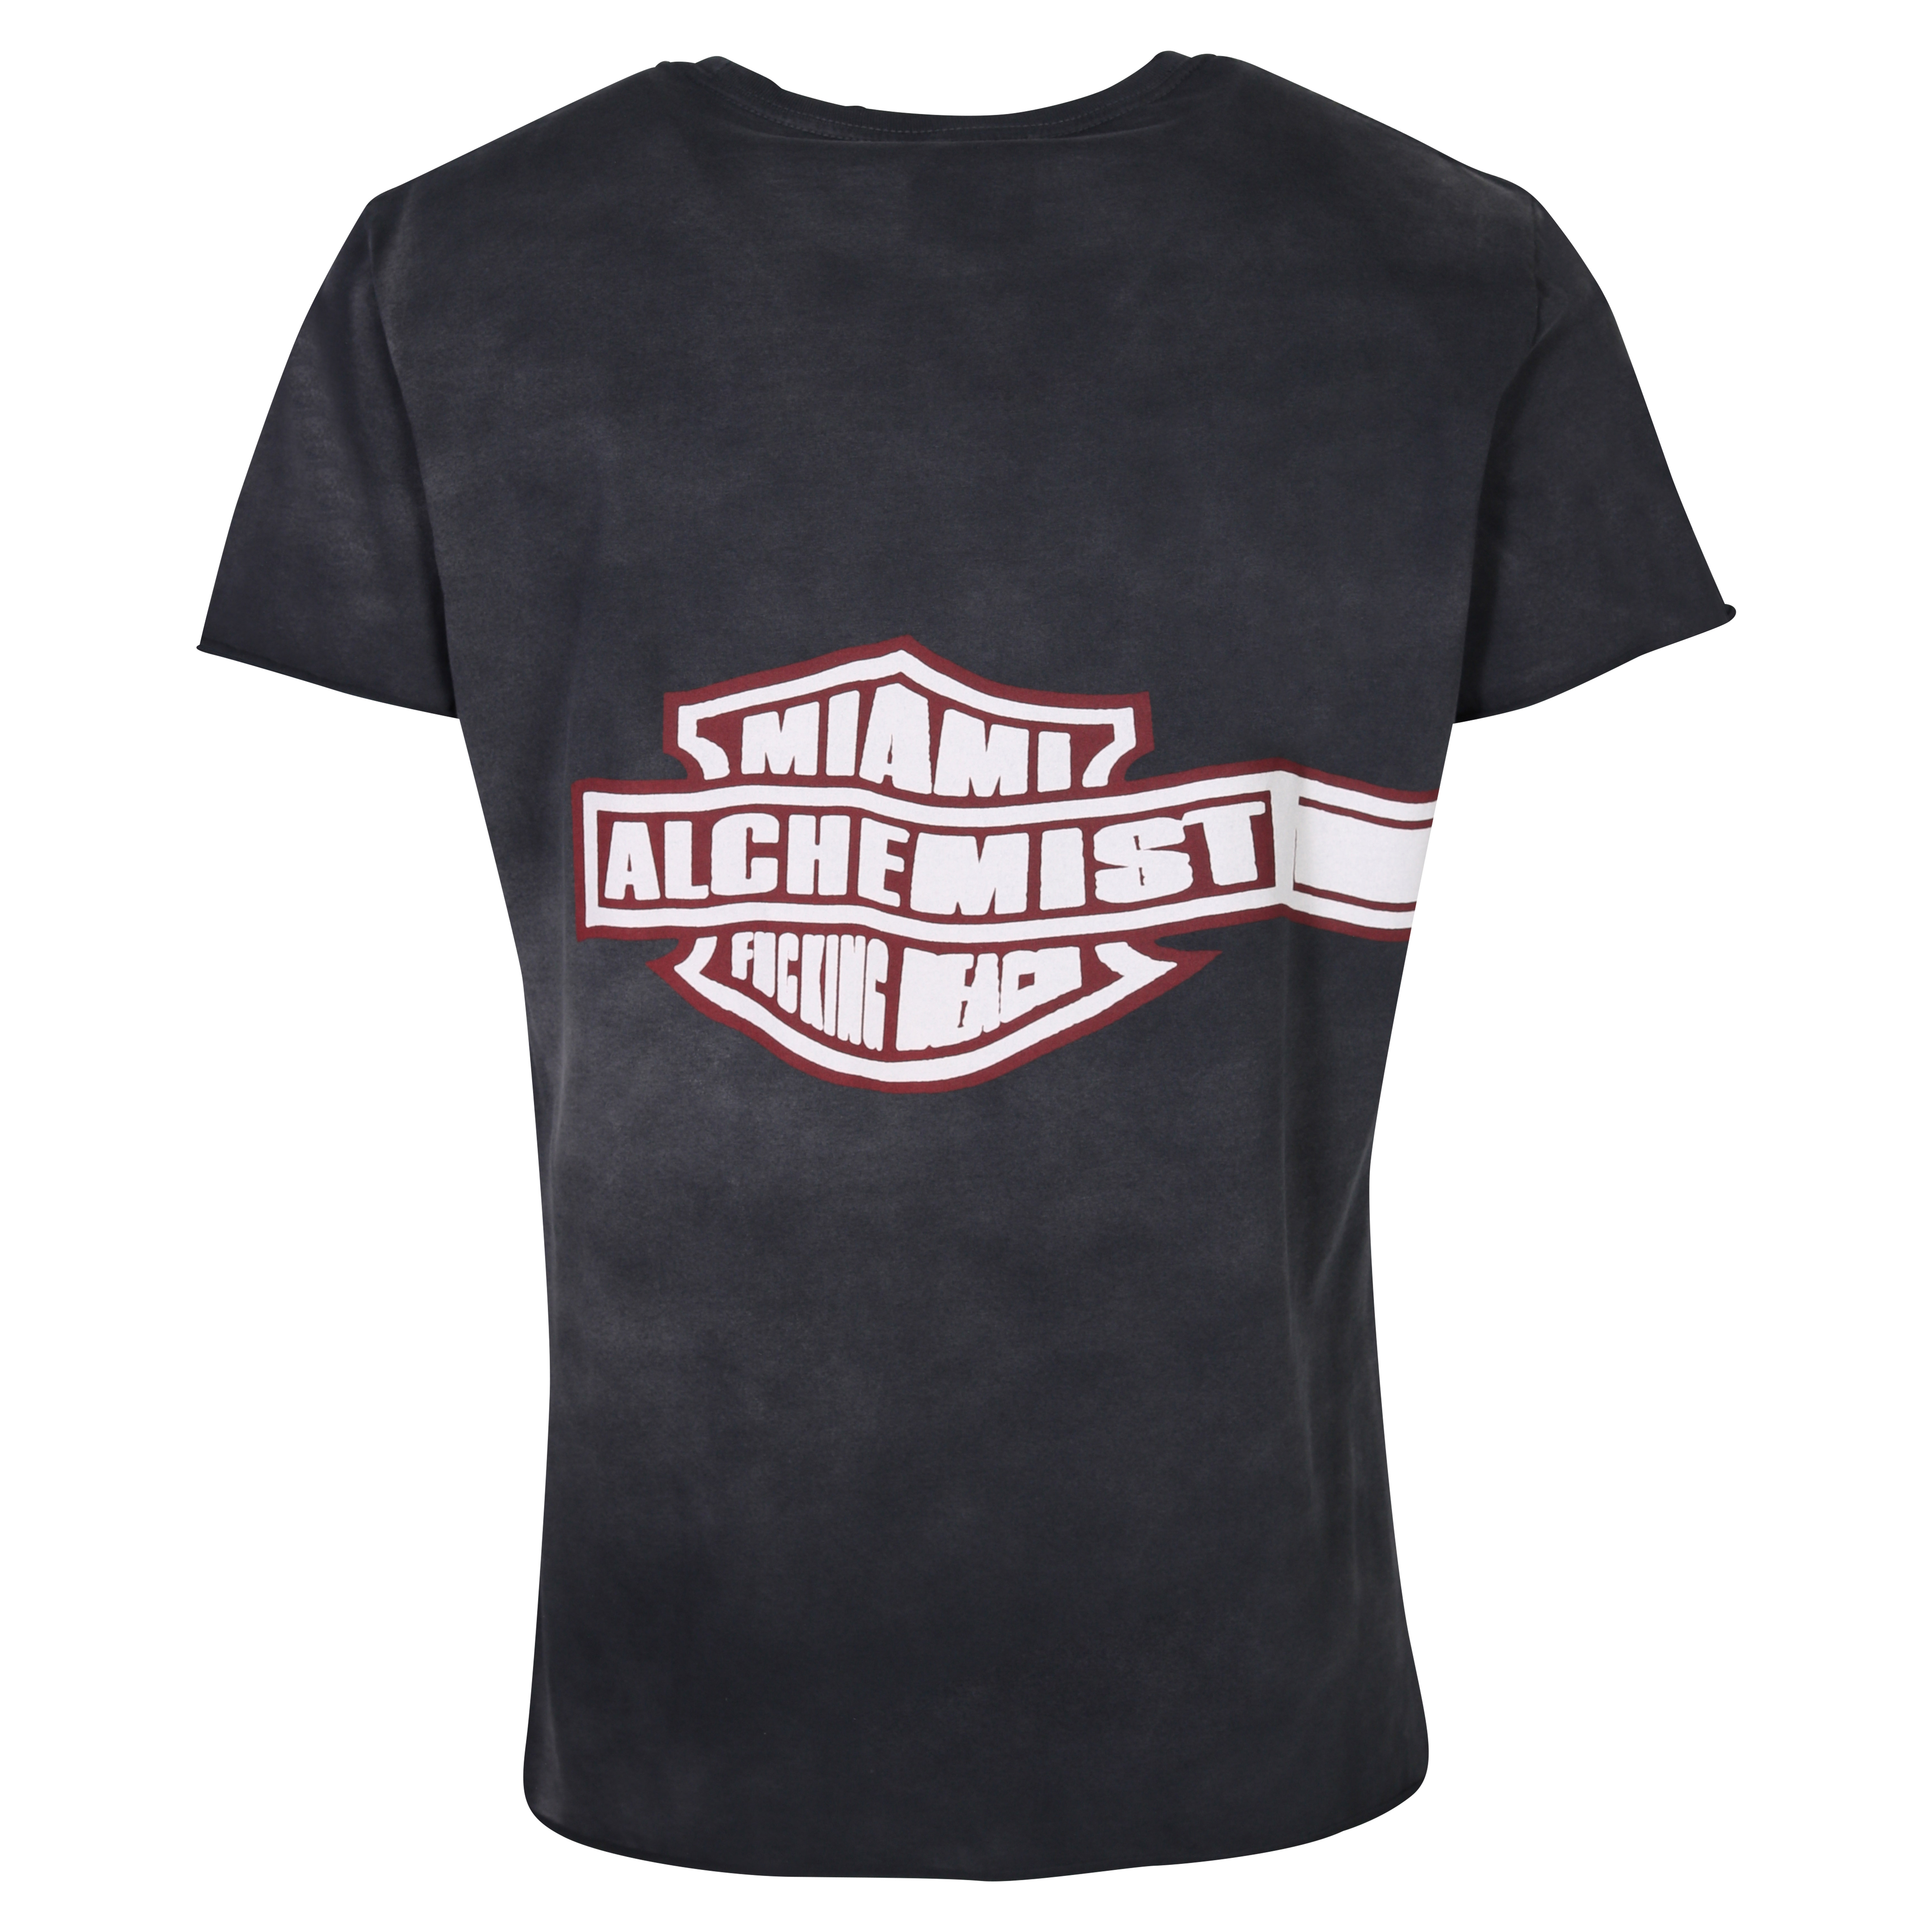 Unisex Alchemist Logan T-Shirt in Vintage Black S